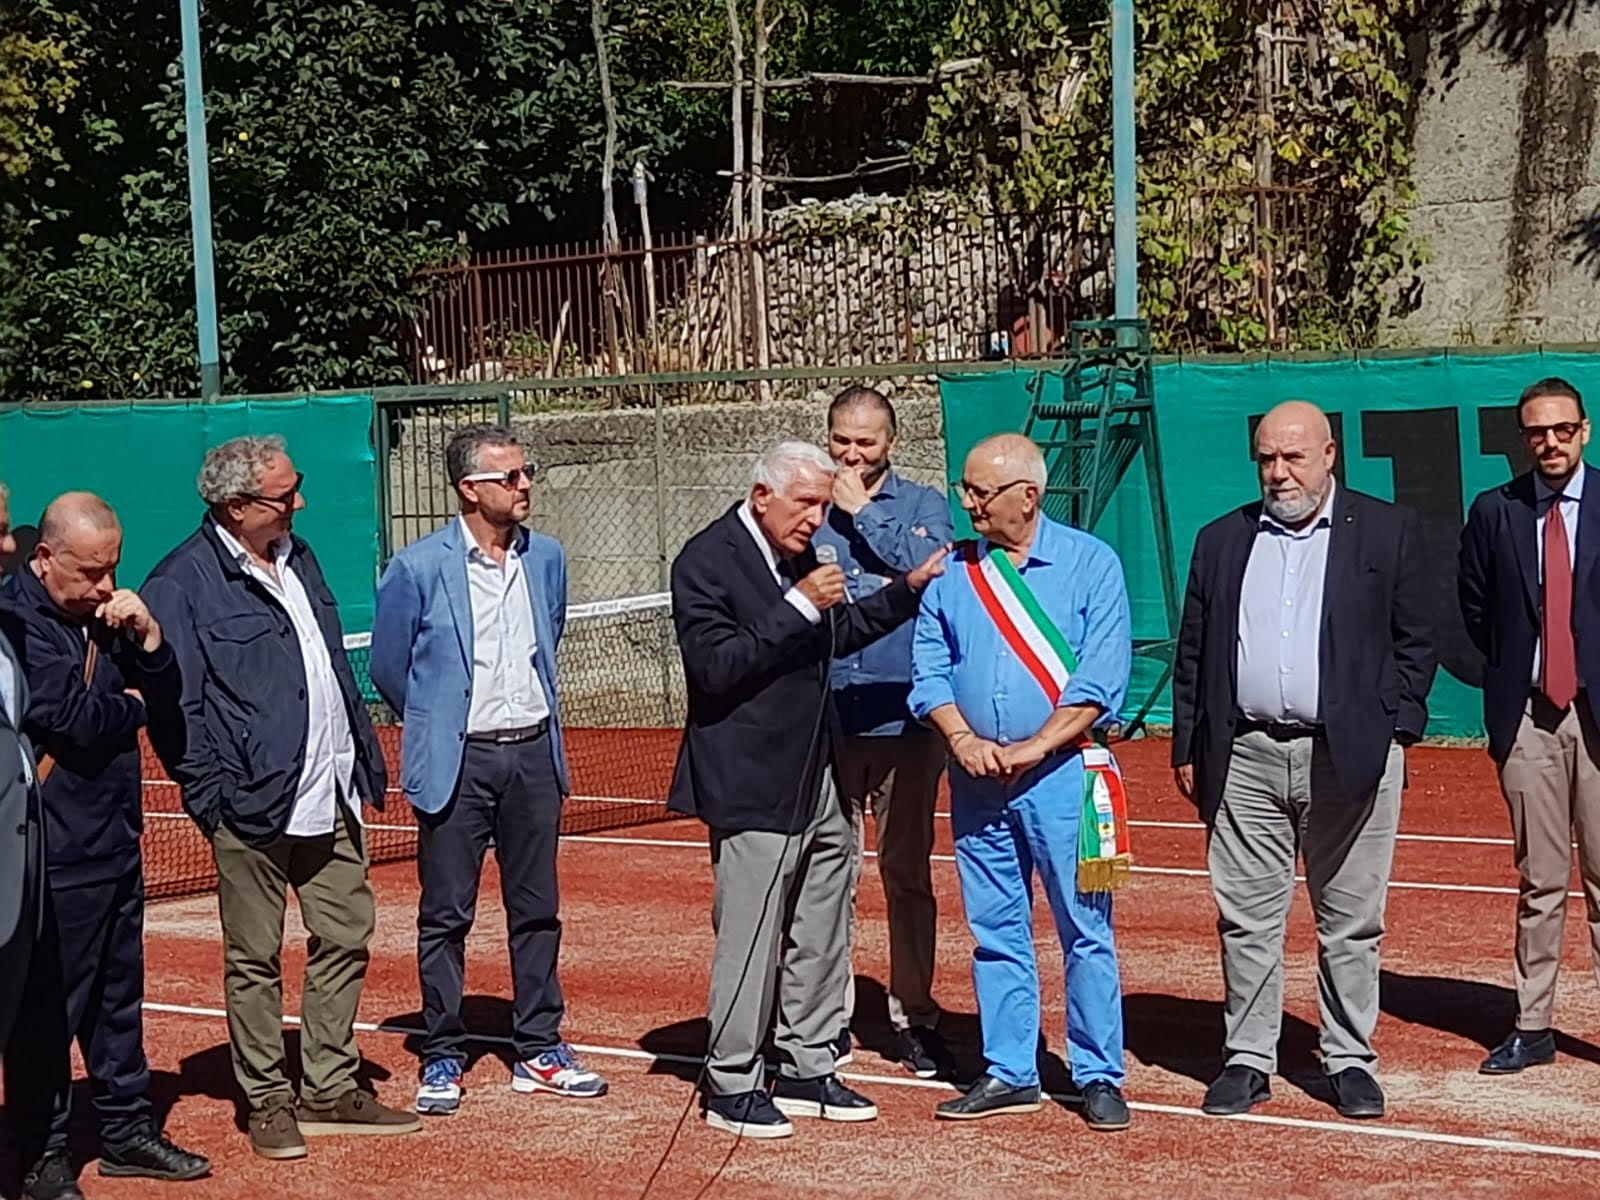 San Roberto, inaugurato il nuovo campo da tennis